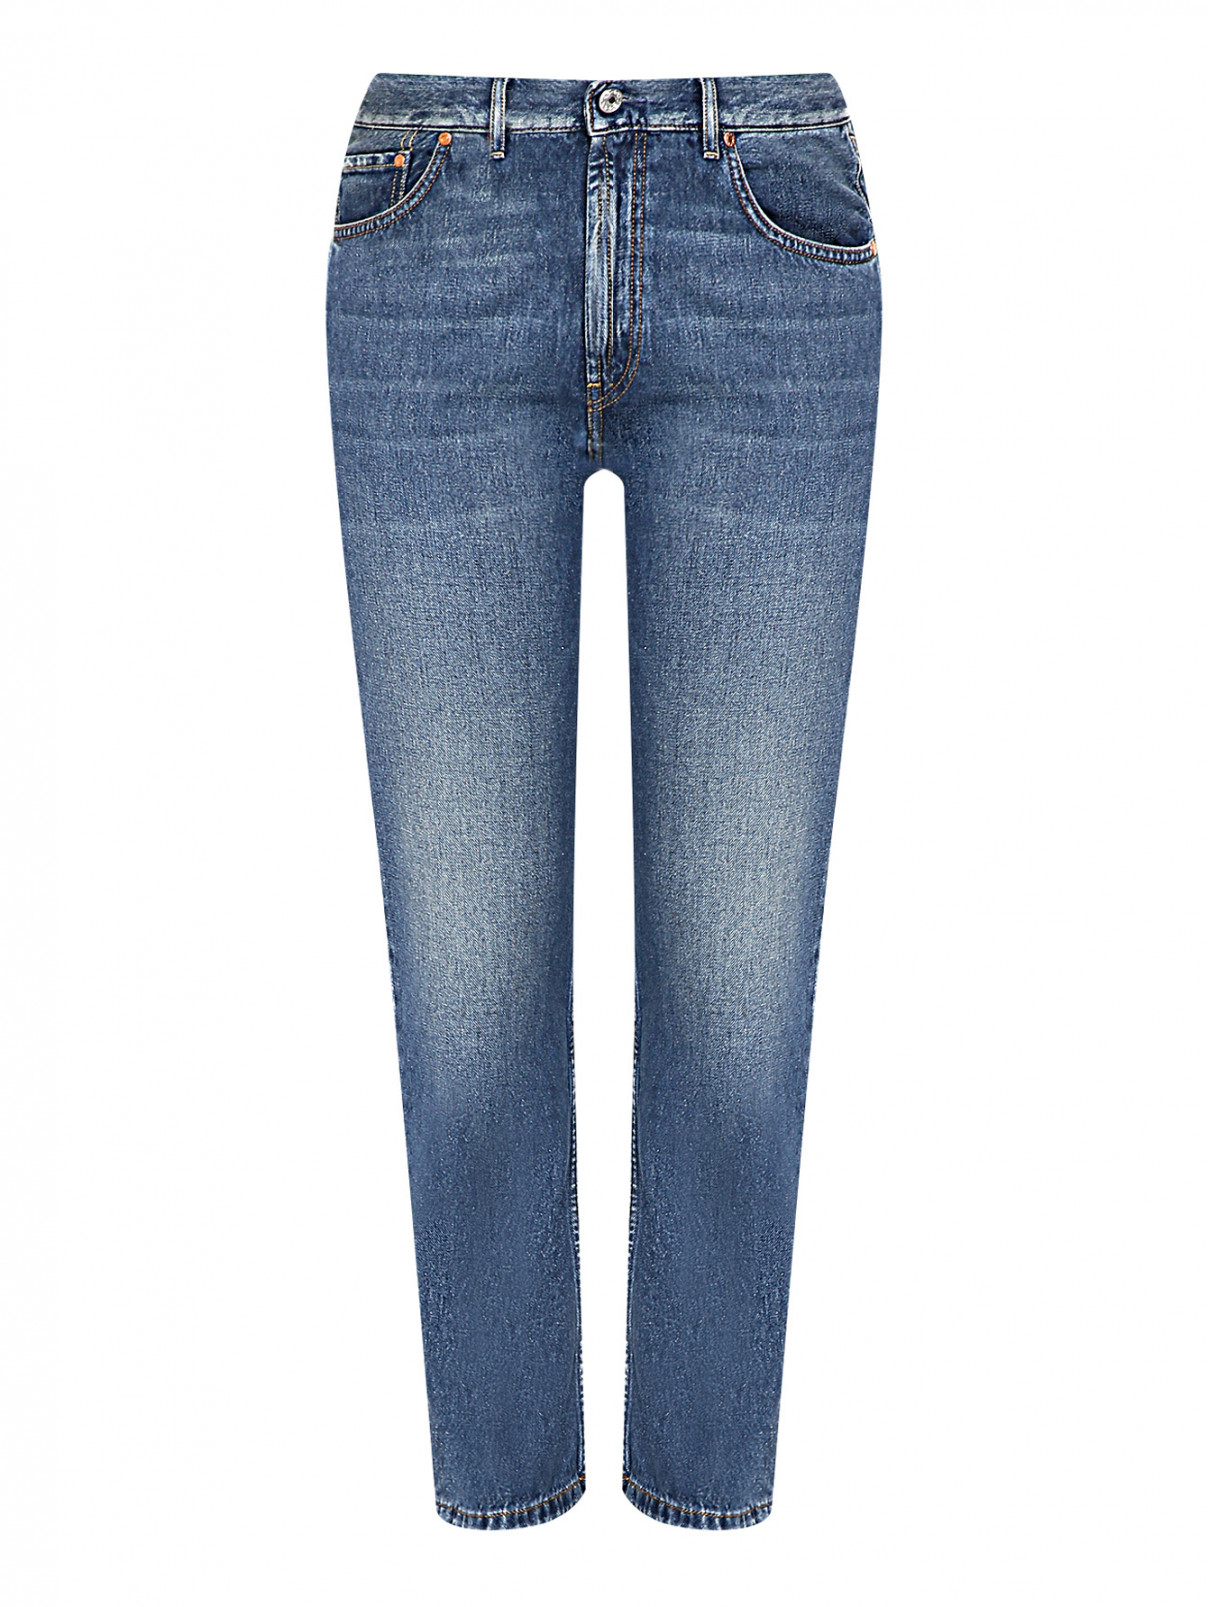 Укороченные джинсы с потертостями Marina Rinaldi  –  Общий вид  – Цвет:  Синий